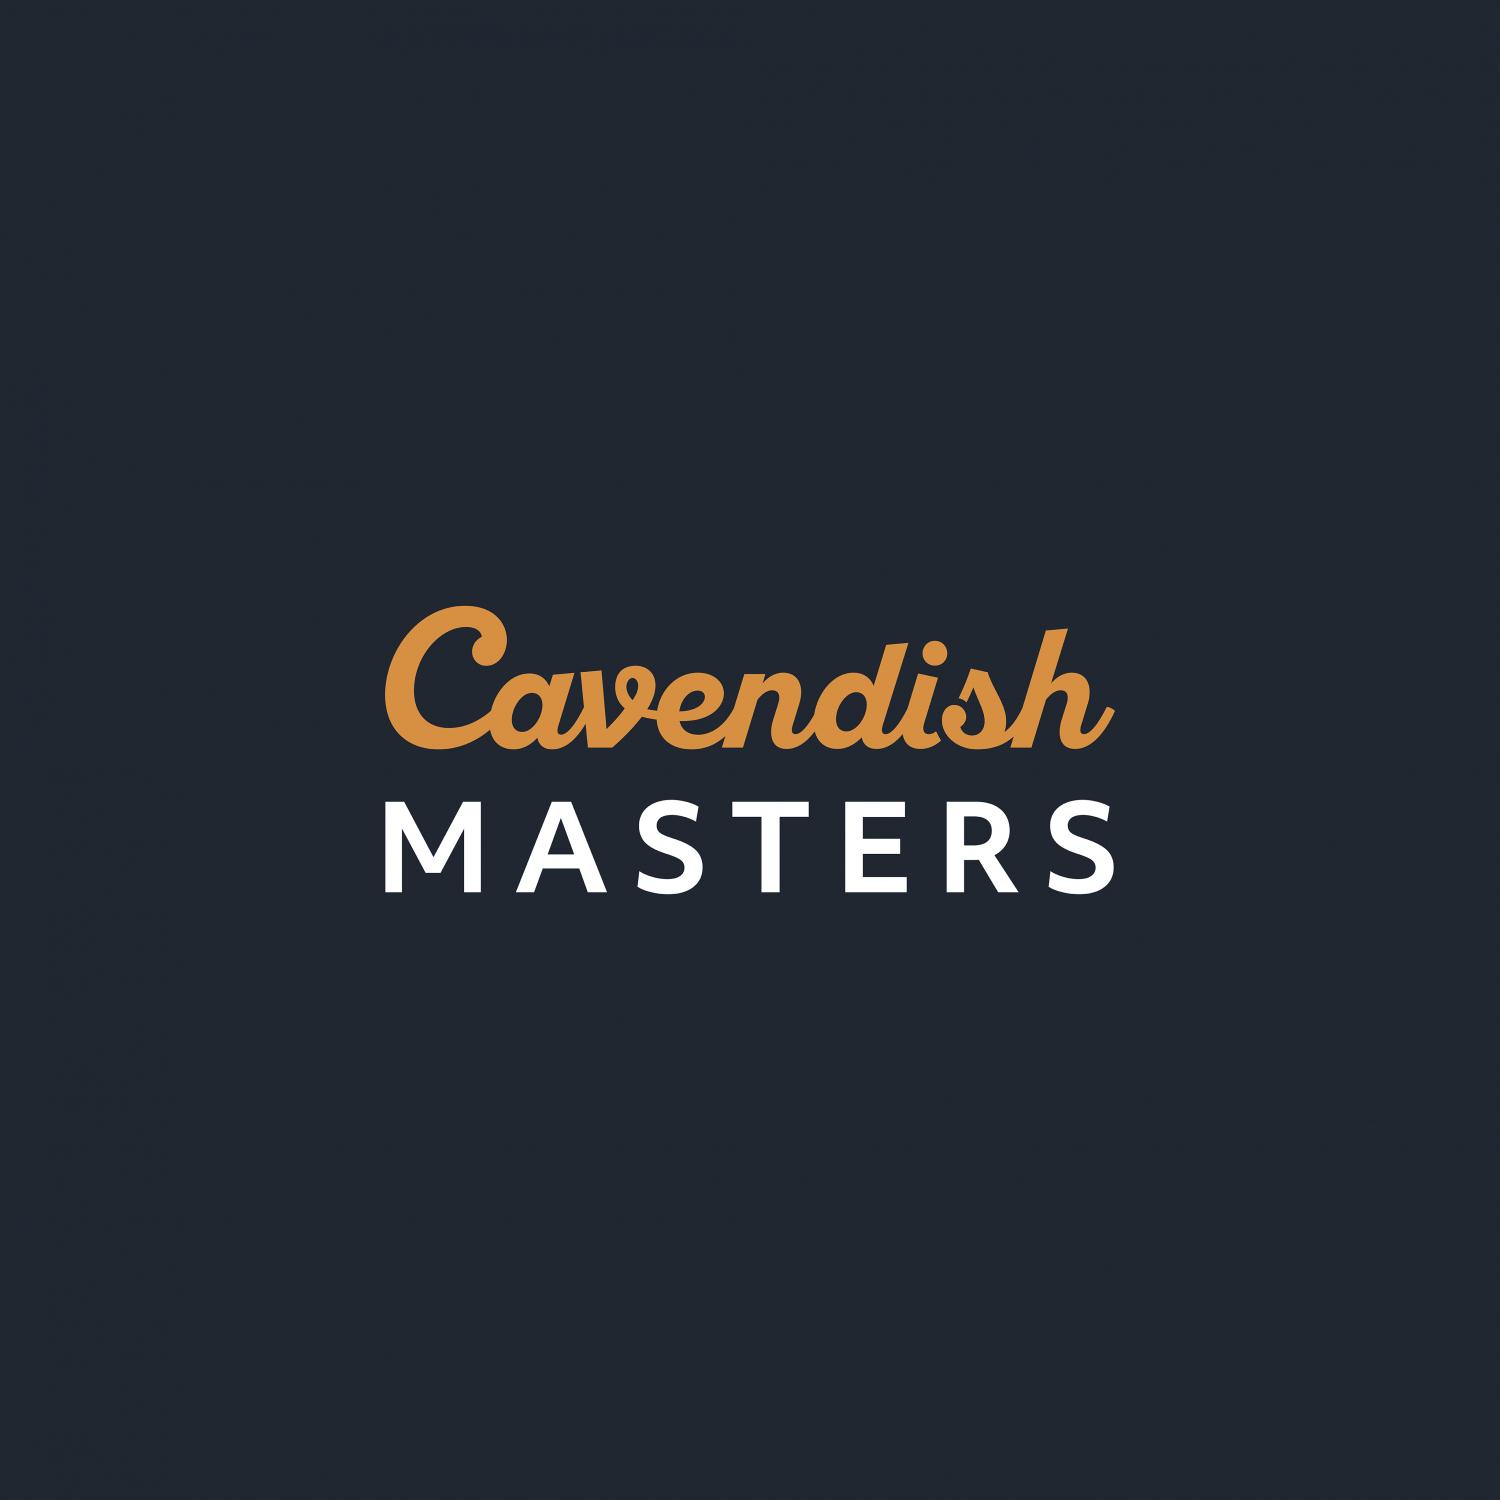 Cavendish Masters - Mr Brightside